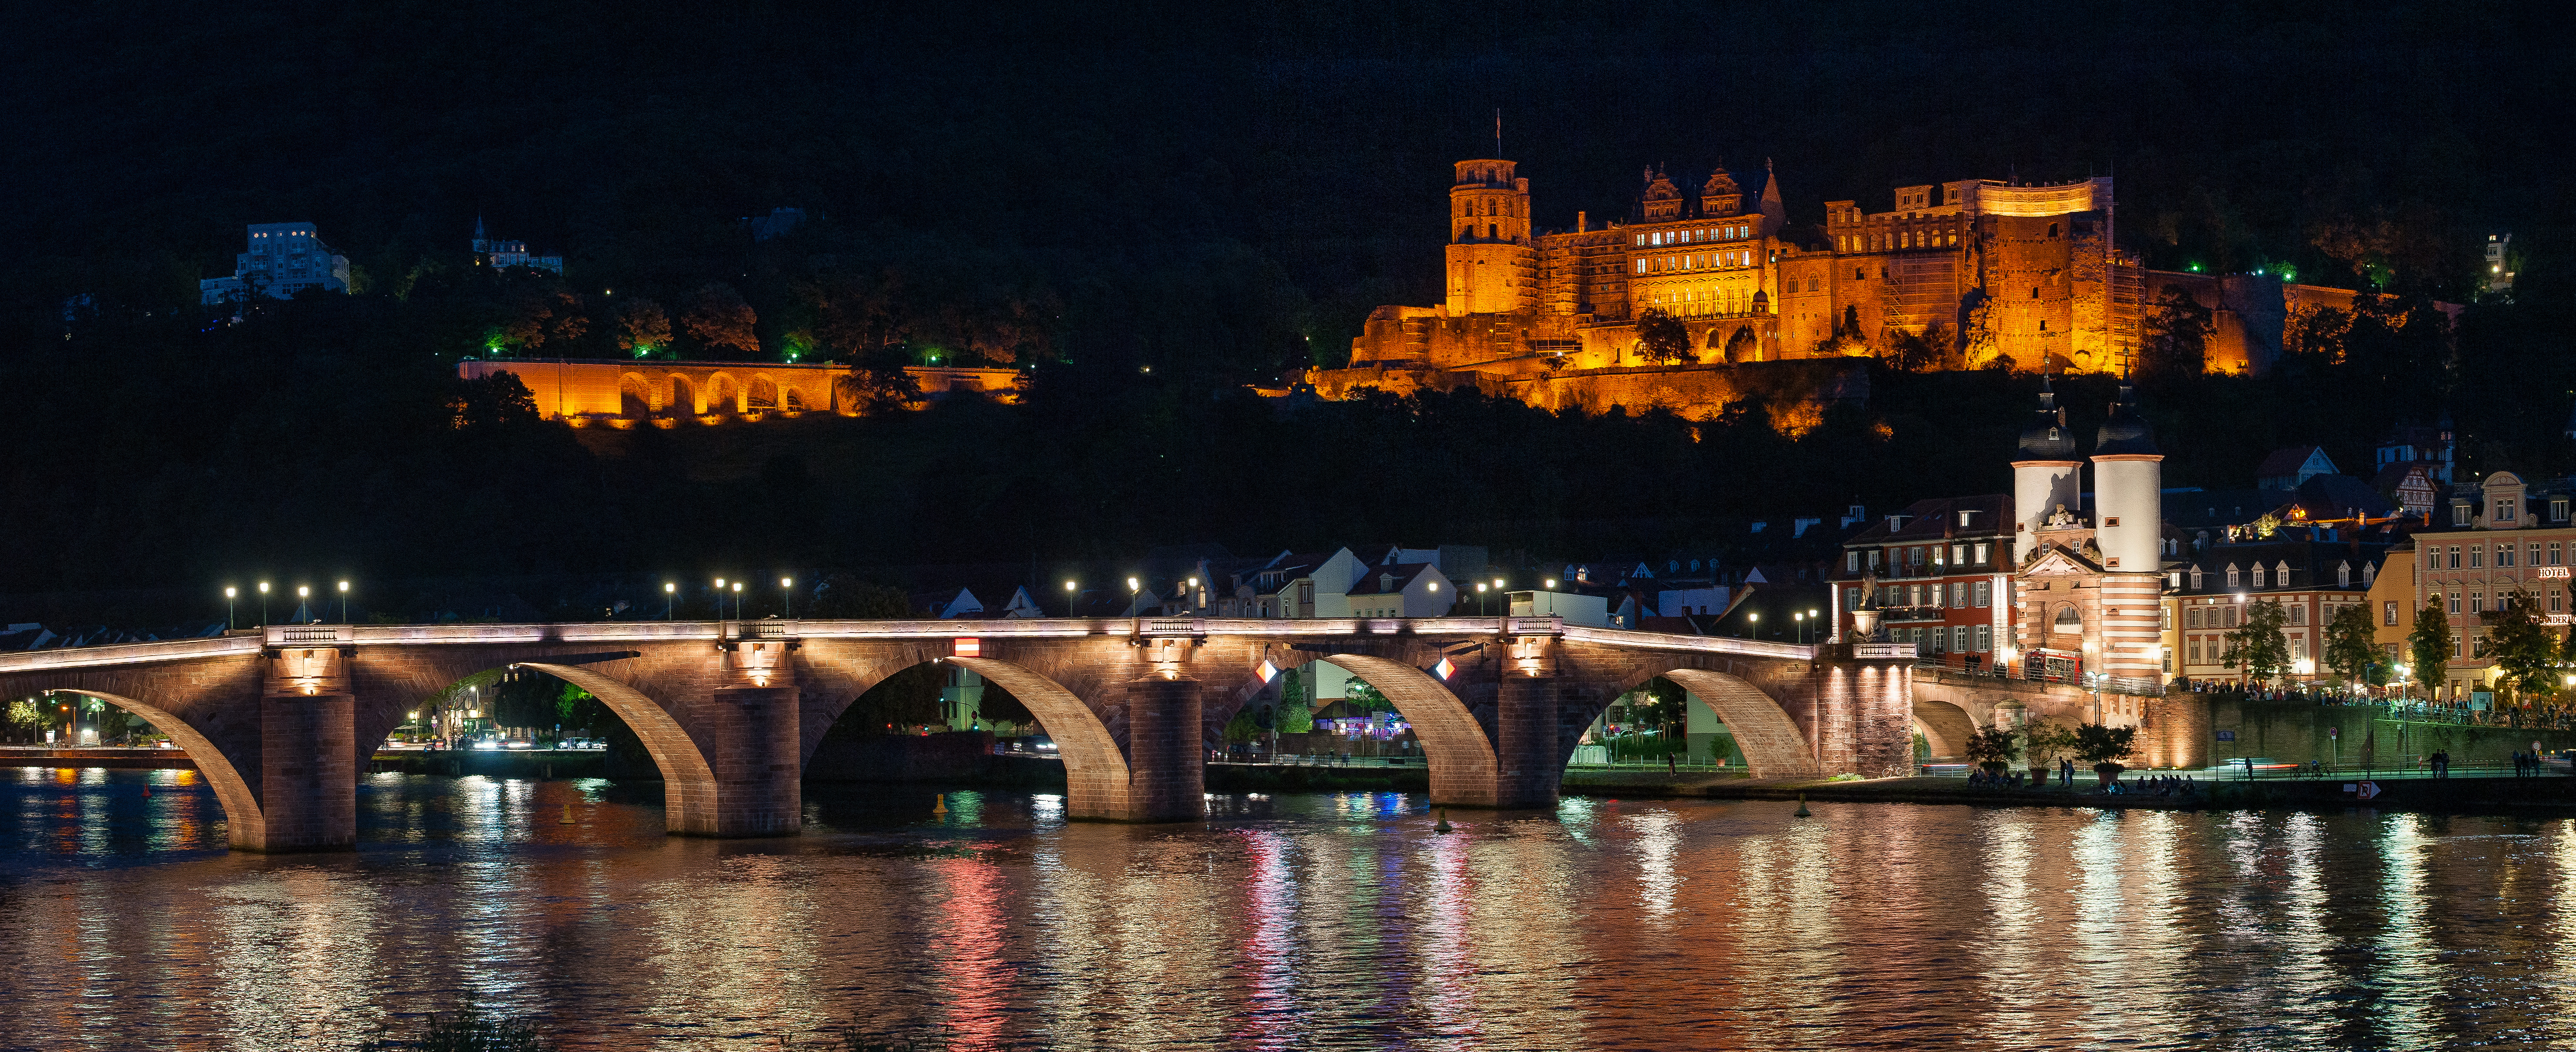 Wallpapers Heidelberg at night arch bridge backlight on the desktop